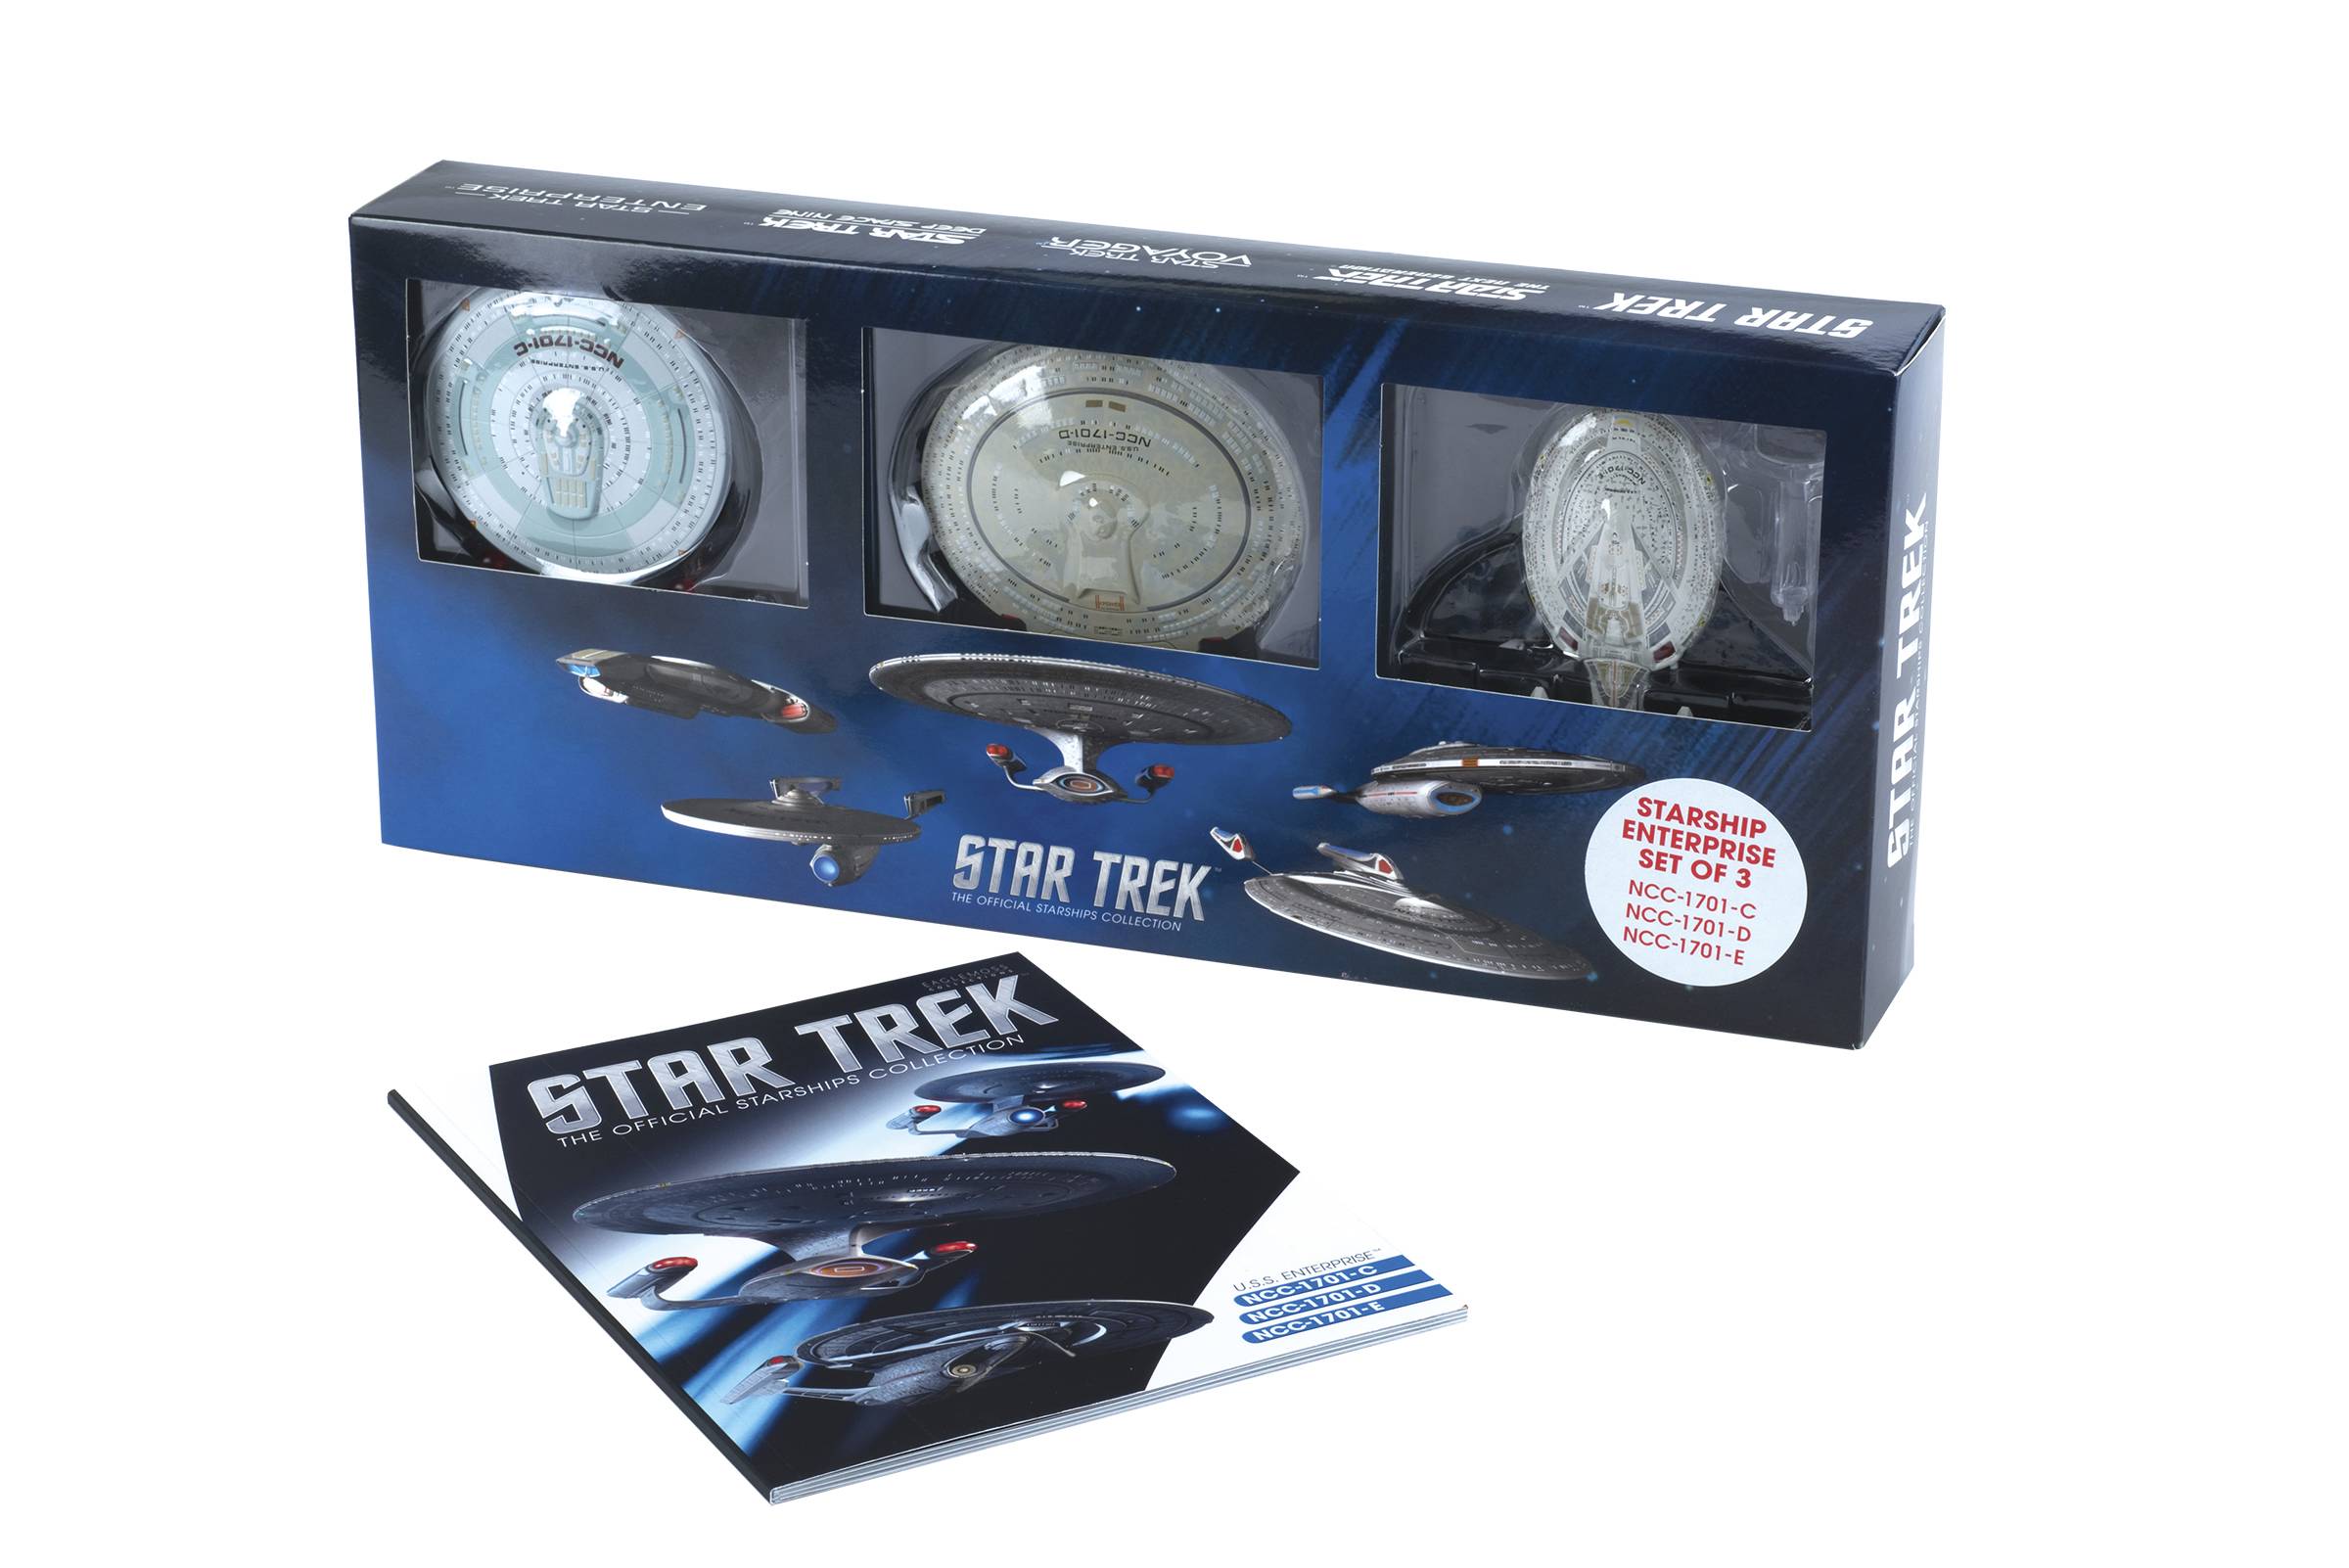 Star Trek Starships Enterprise C,D,E Set w/ Special Magazines 